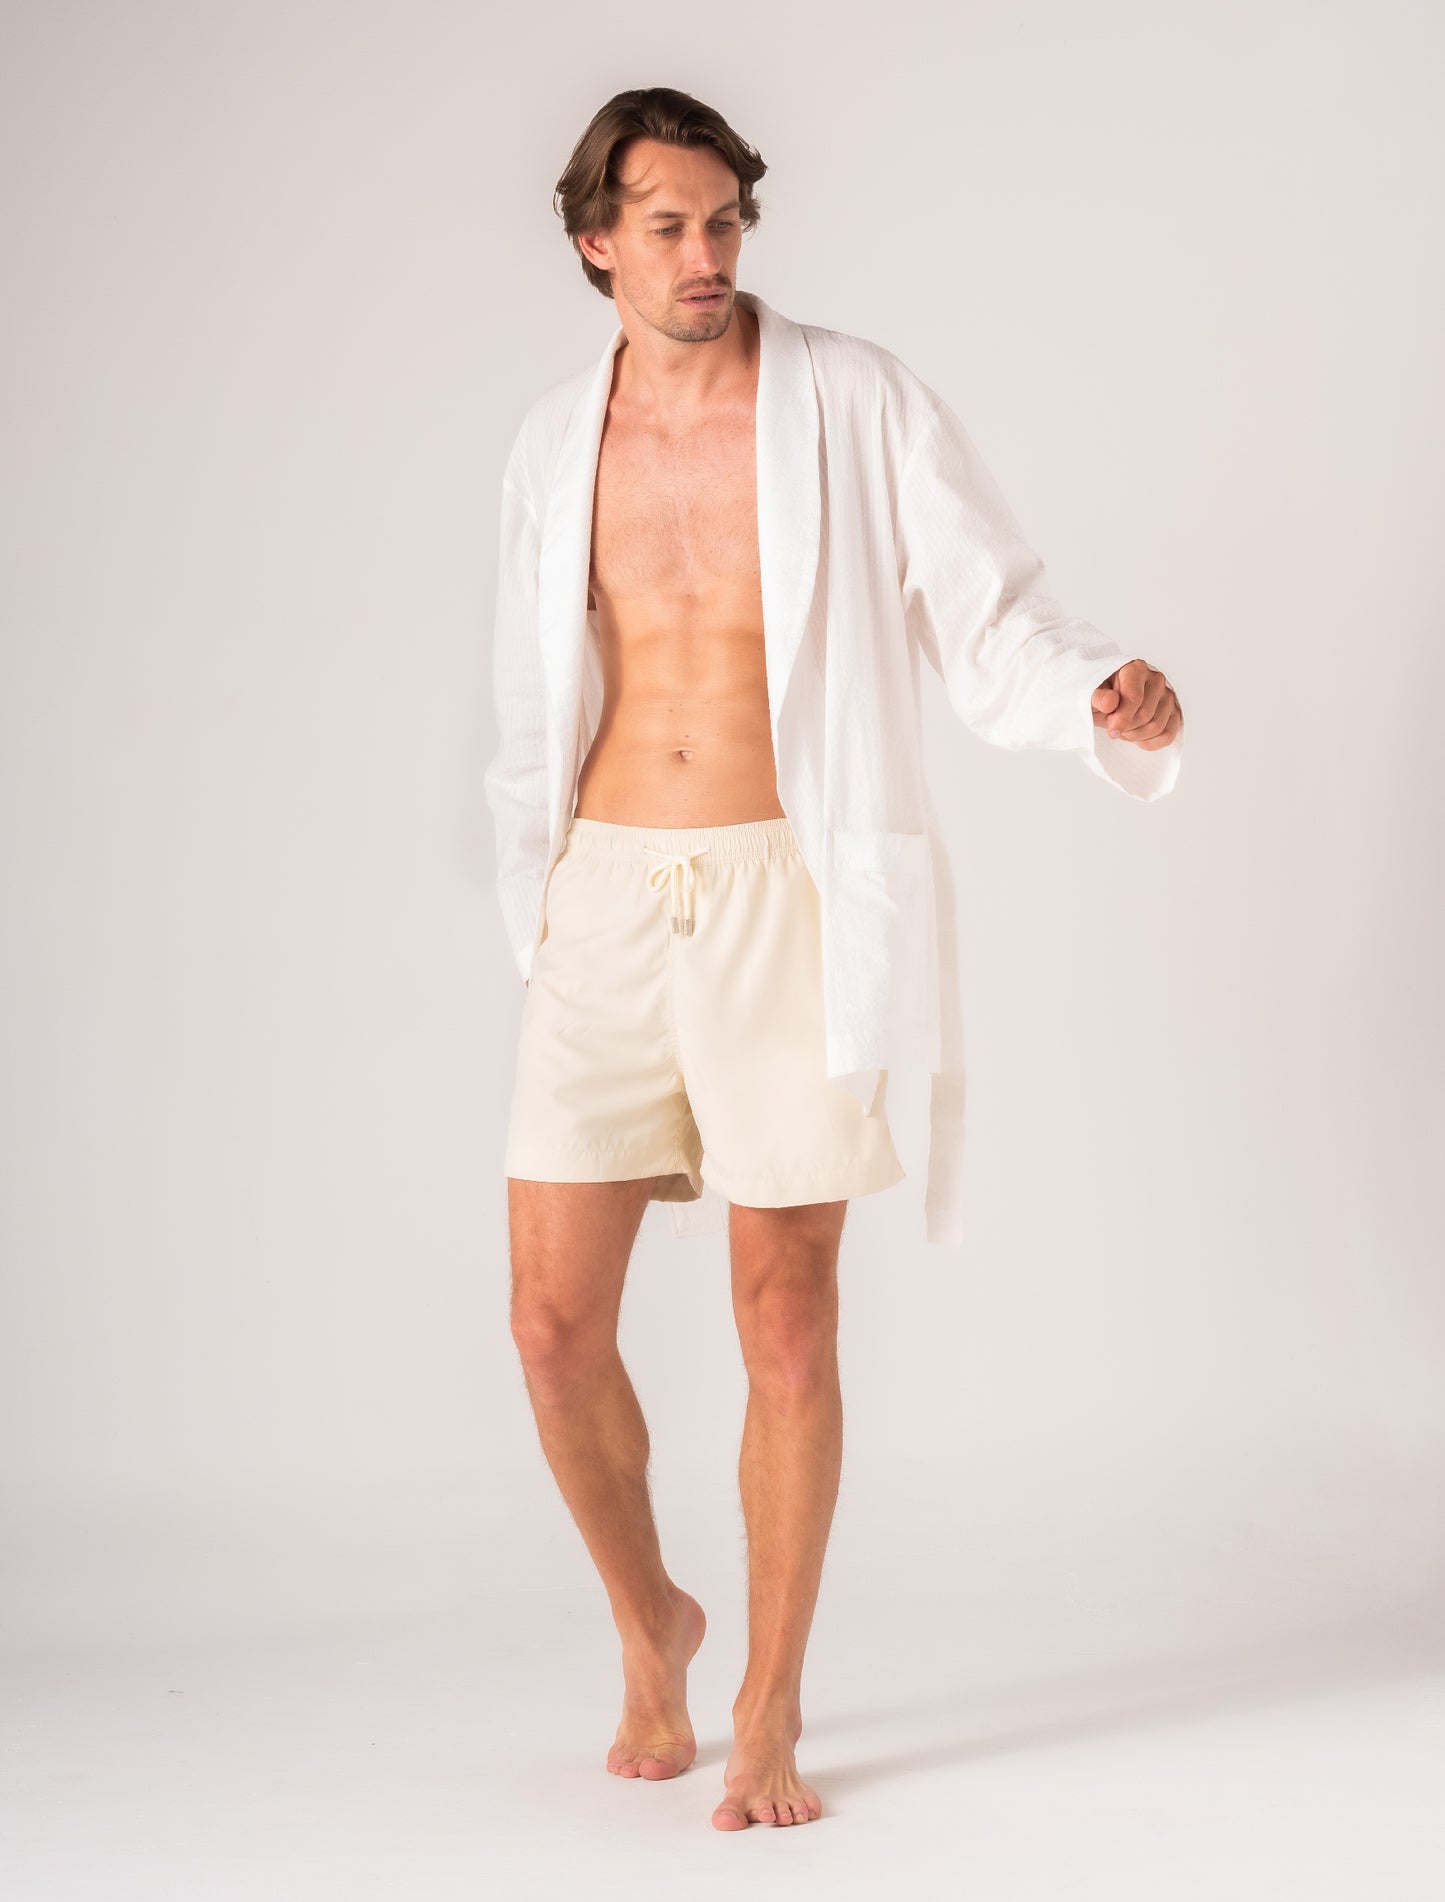 Amalfi White Cotton Robe